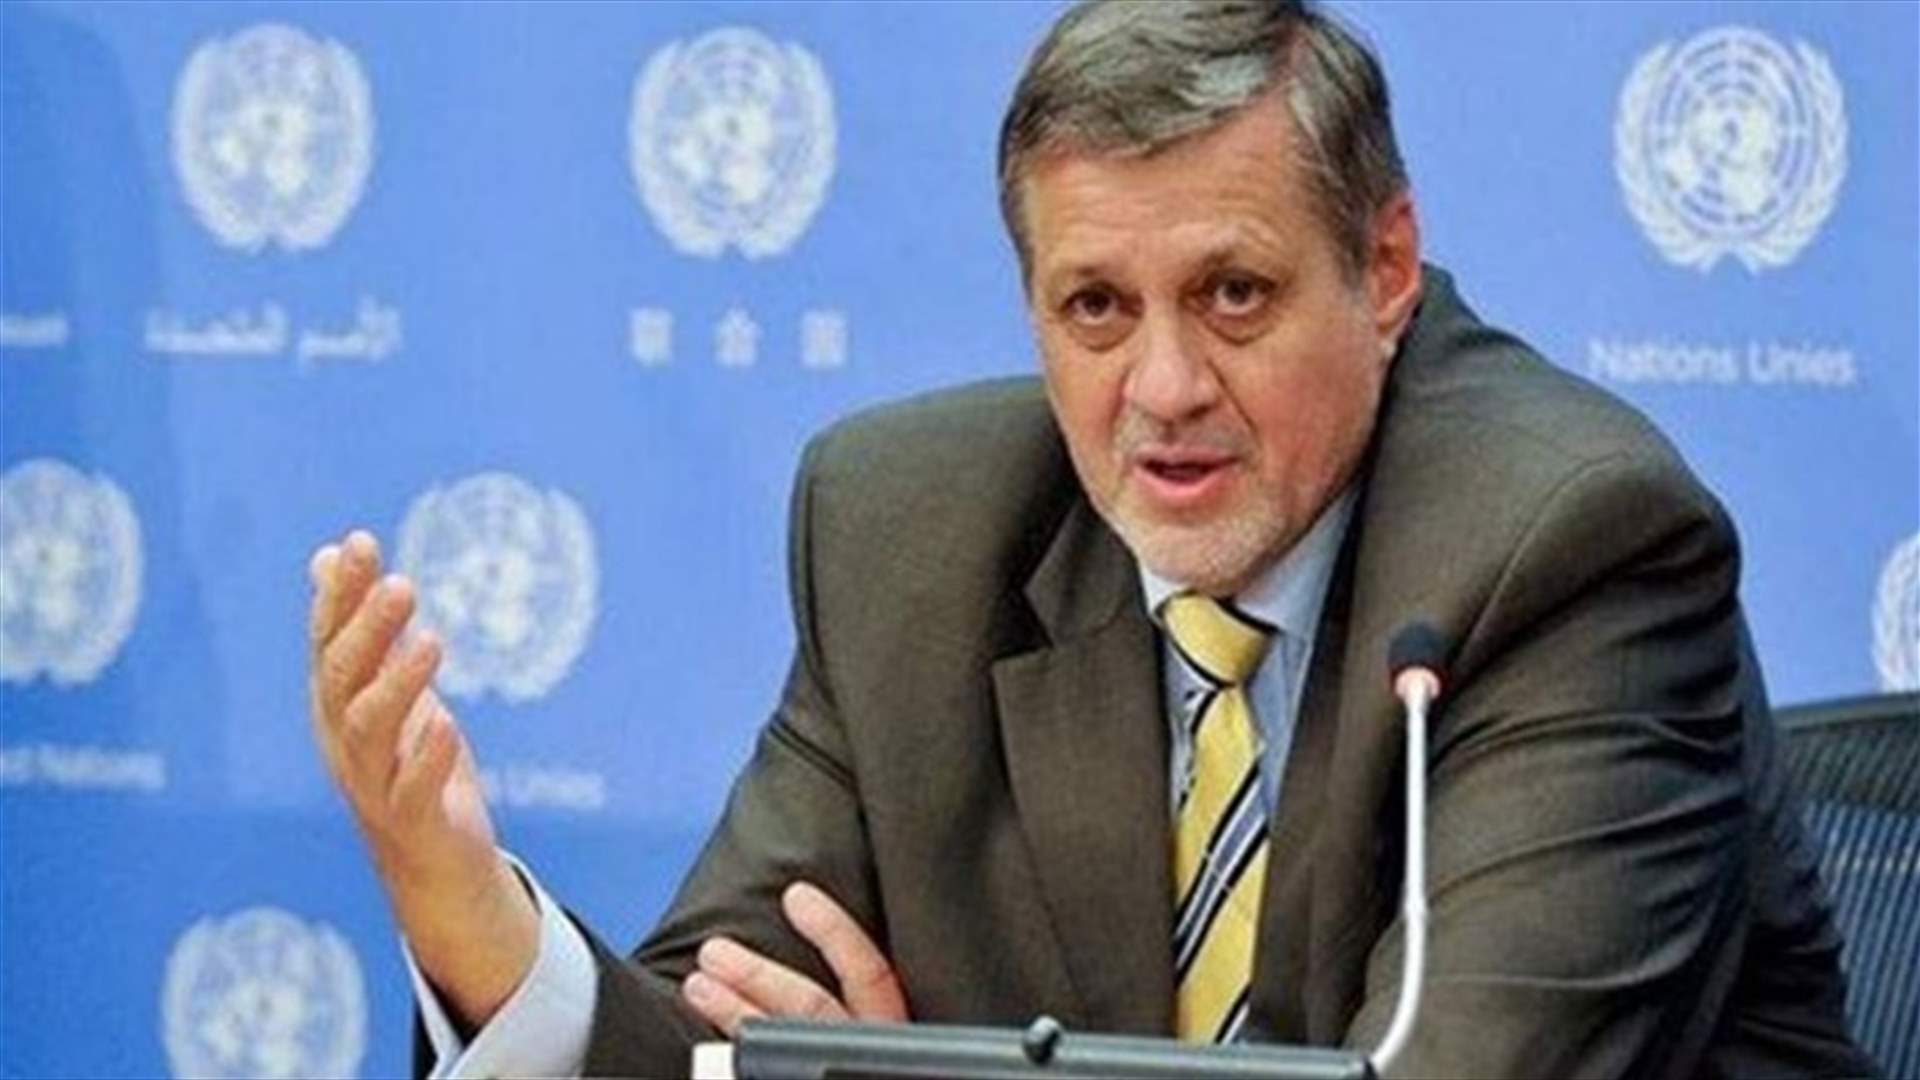 المنسق الخاص للأمم المتحدة في لبنان ووكيل الأمين العام لعمليات حفظ السلام يقدمان احاطة الى مجلس الامن حول تطبيق القرار 1701